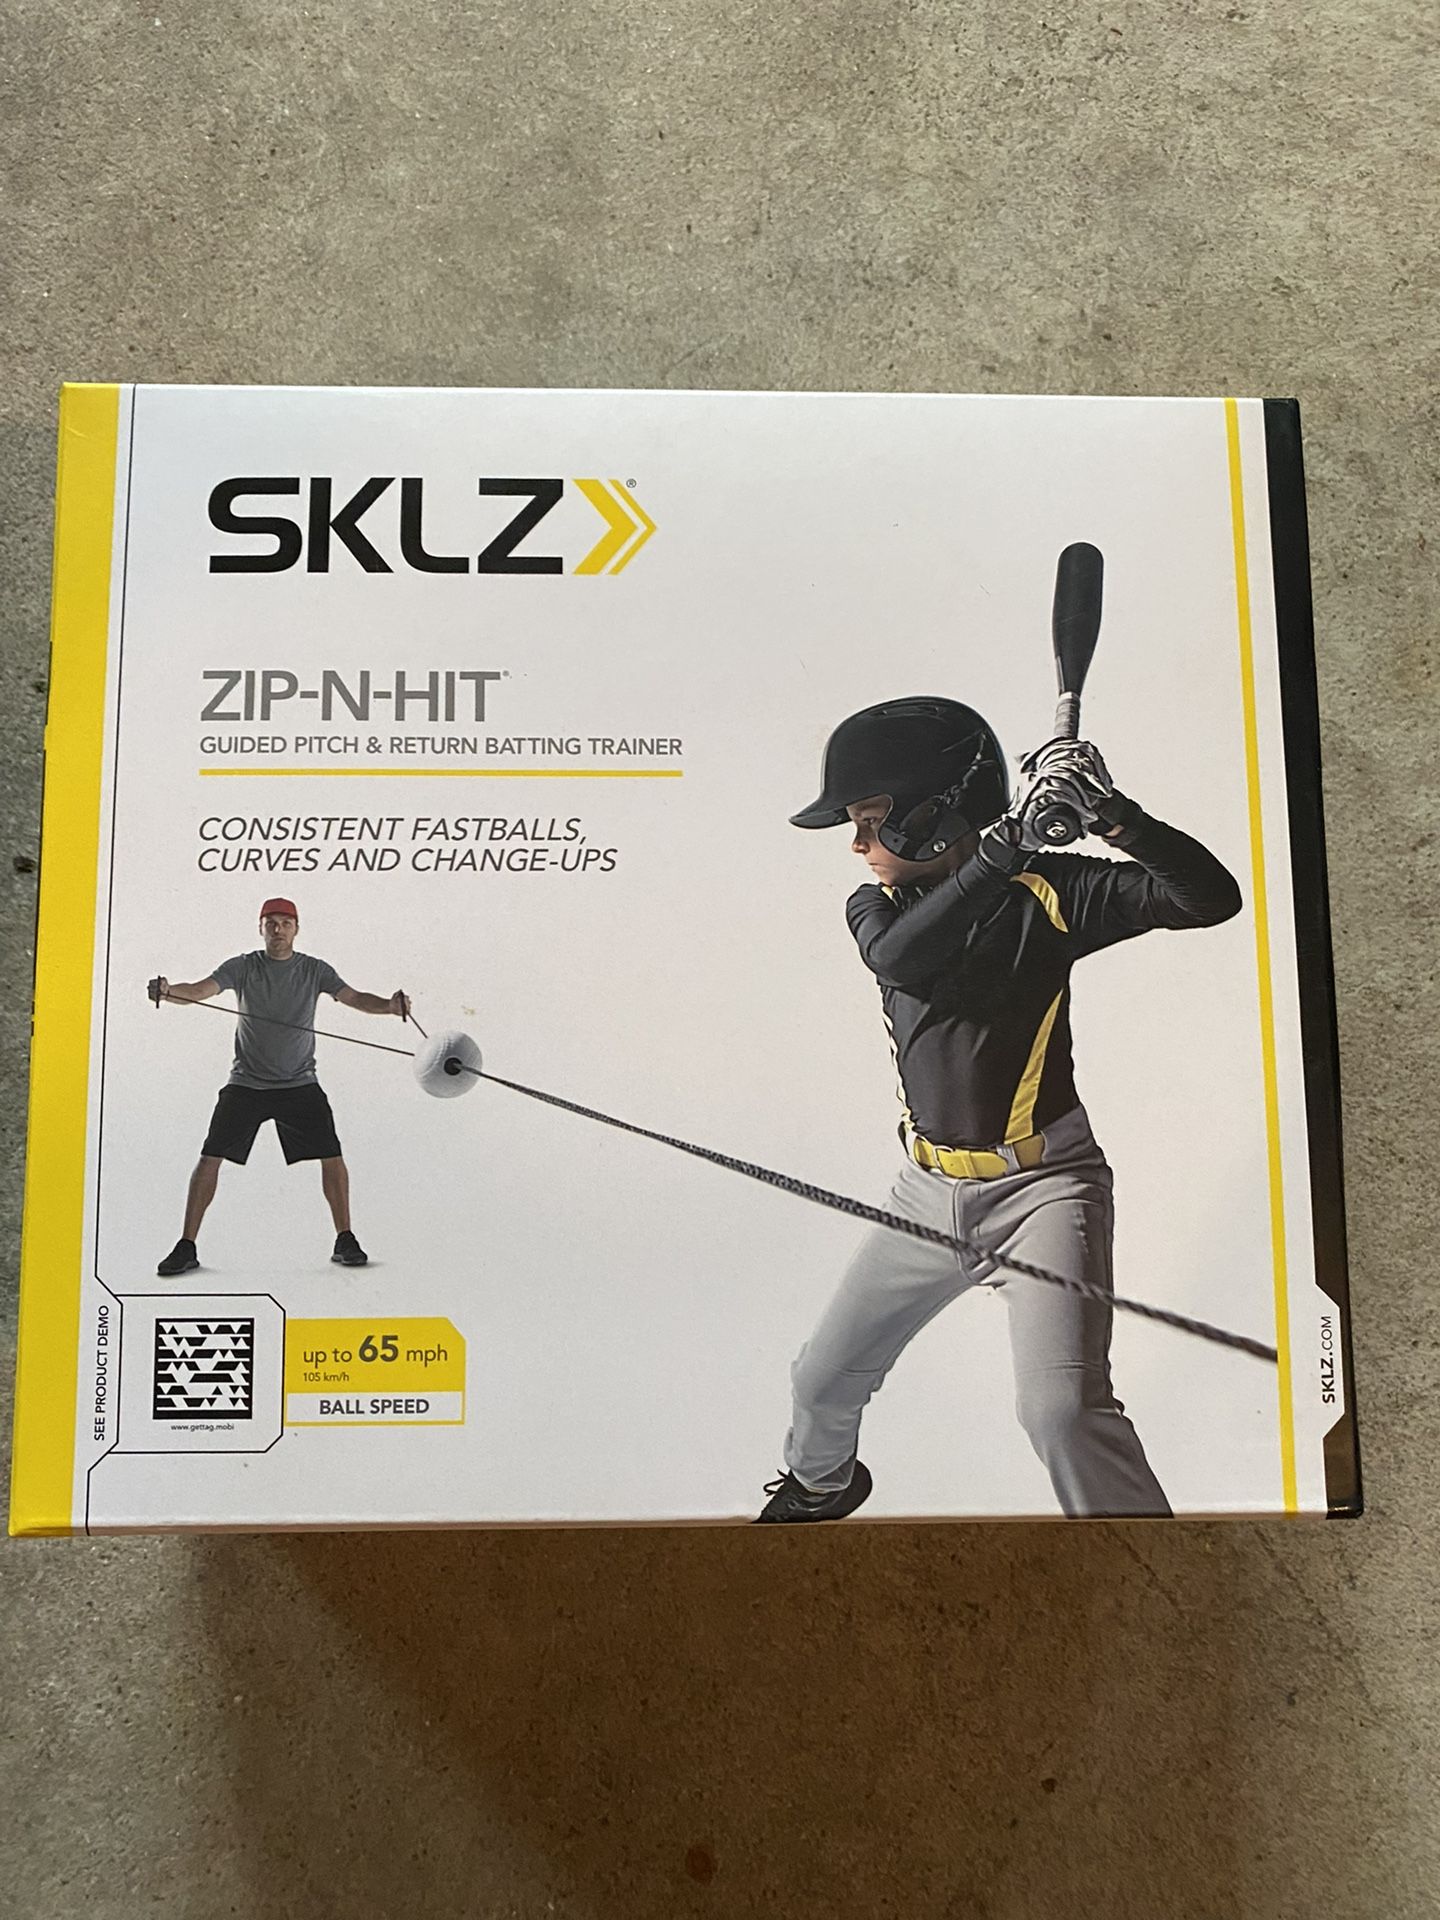 Zip-N-Hit by SKLZ